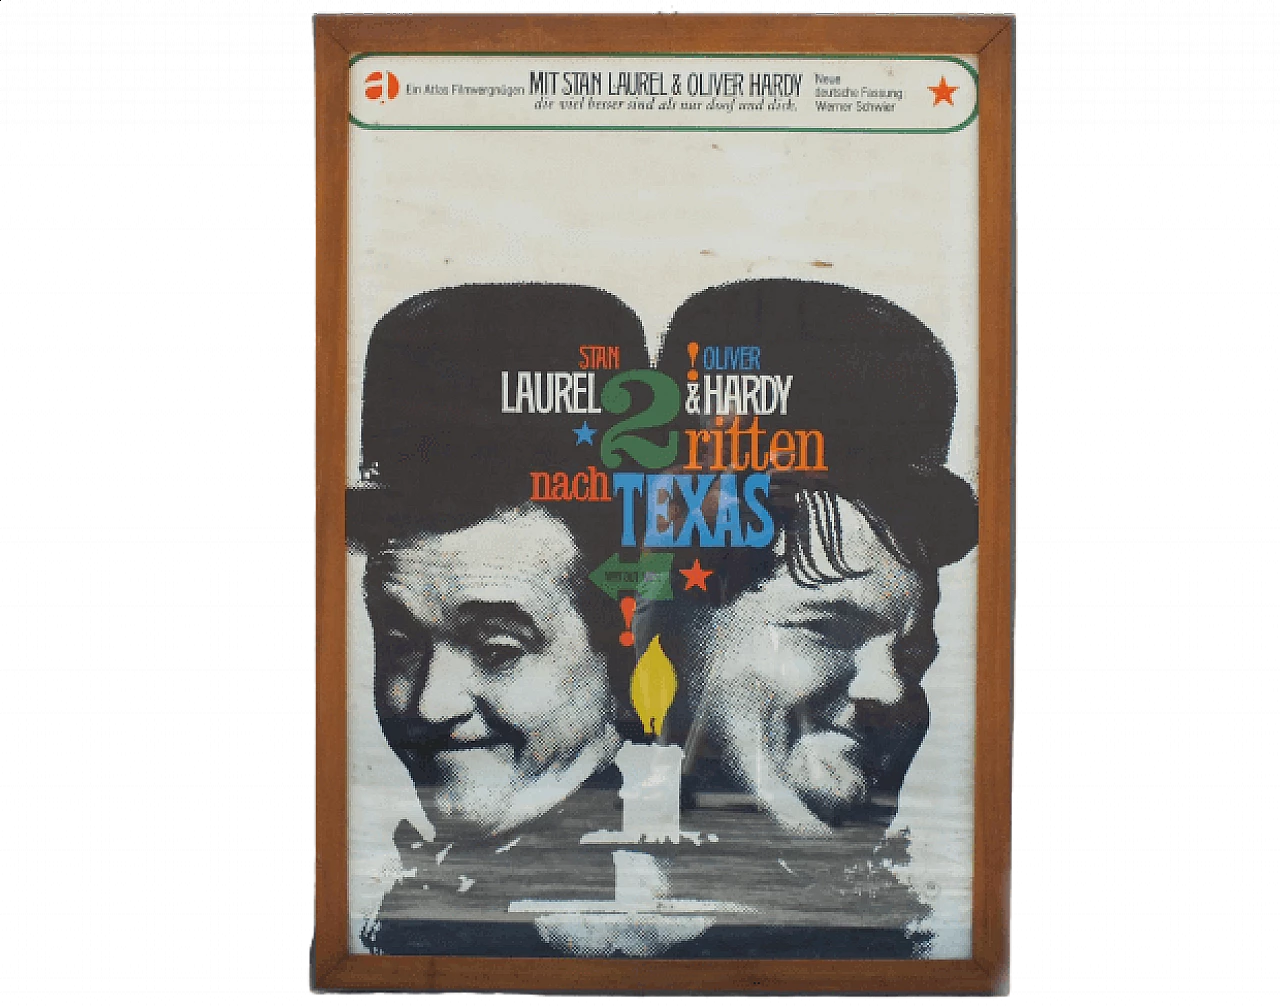 Laurel & Hardy - Zwei ritten nach Texas movie poster, 1960s 10